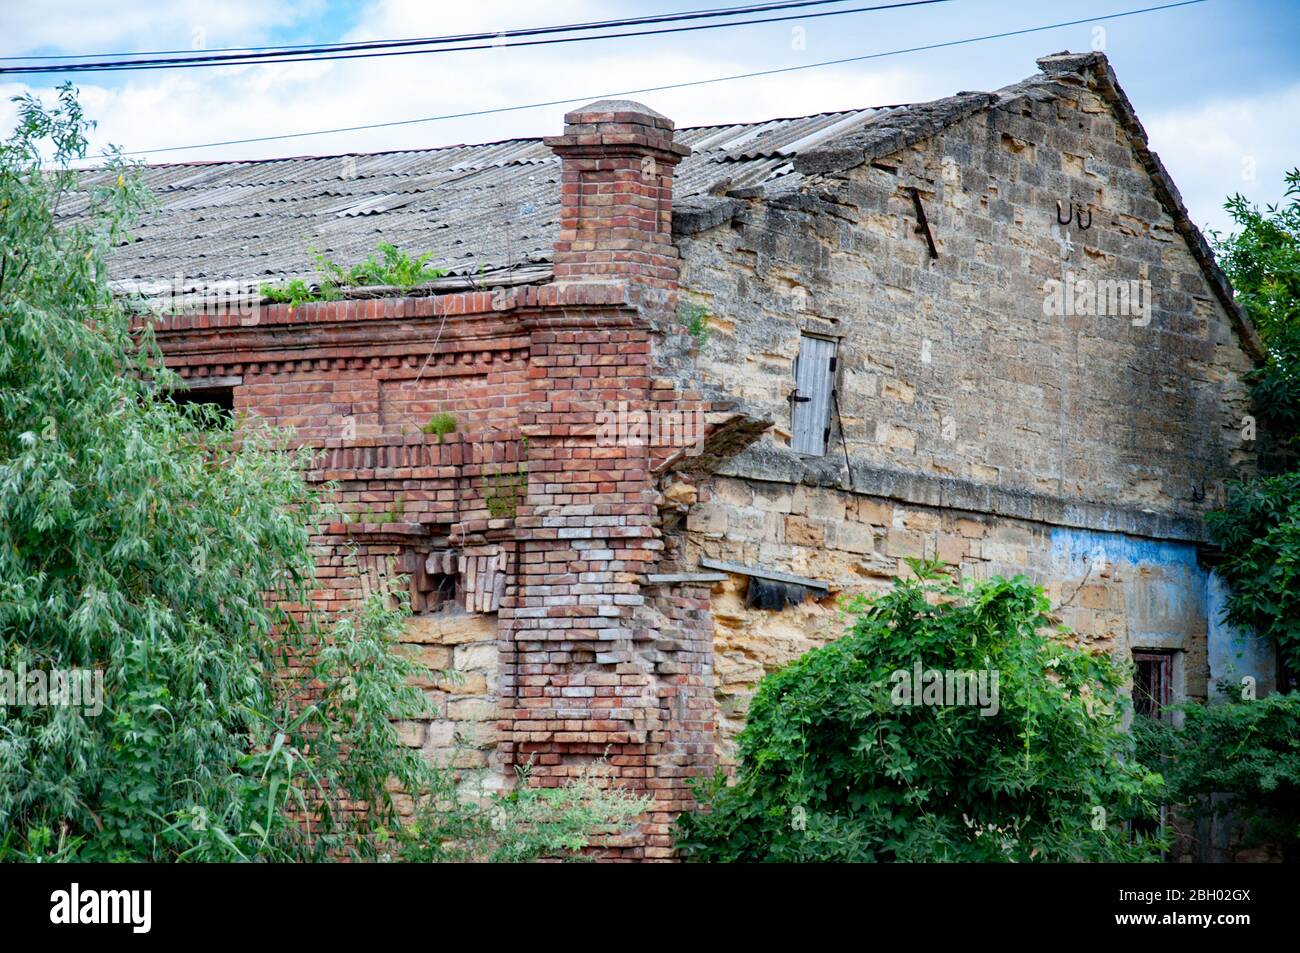 Verlassene Haus mit baufälligen Ziegelmauern, überwuchert von Kletterpflanzen und Bäumen. Struktur von Mauerwerk ruinierte Gebäude. Stockfoto